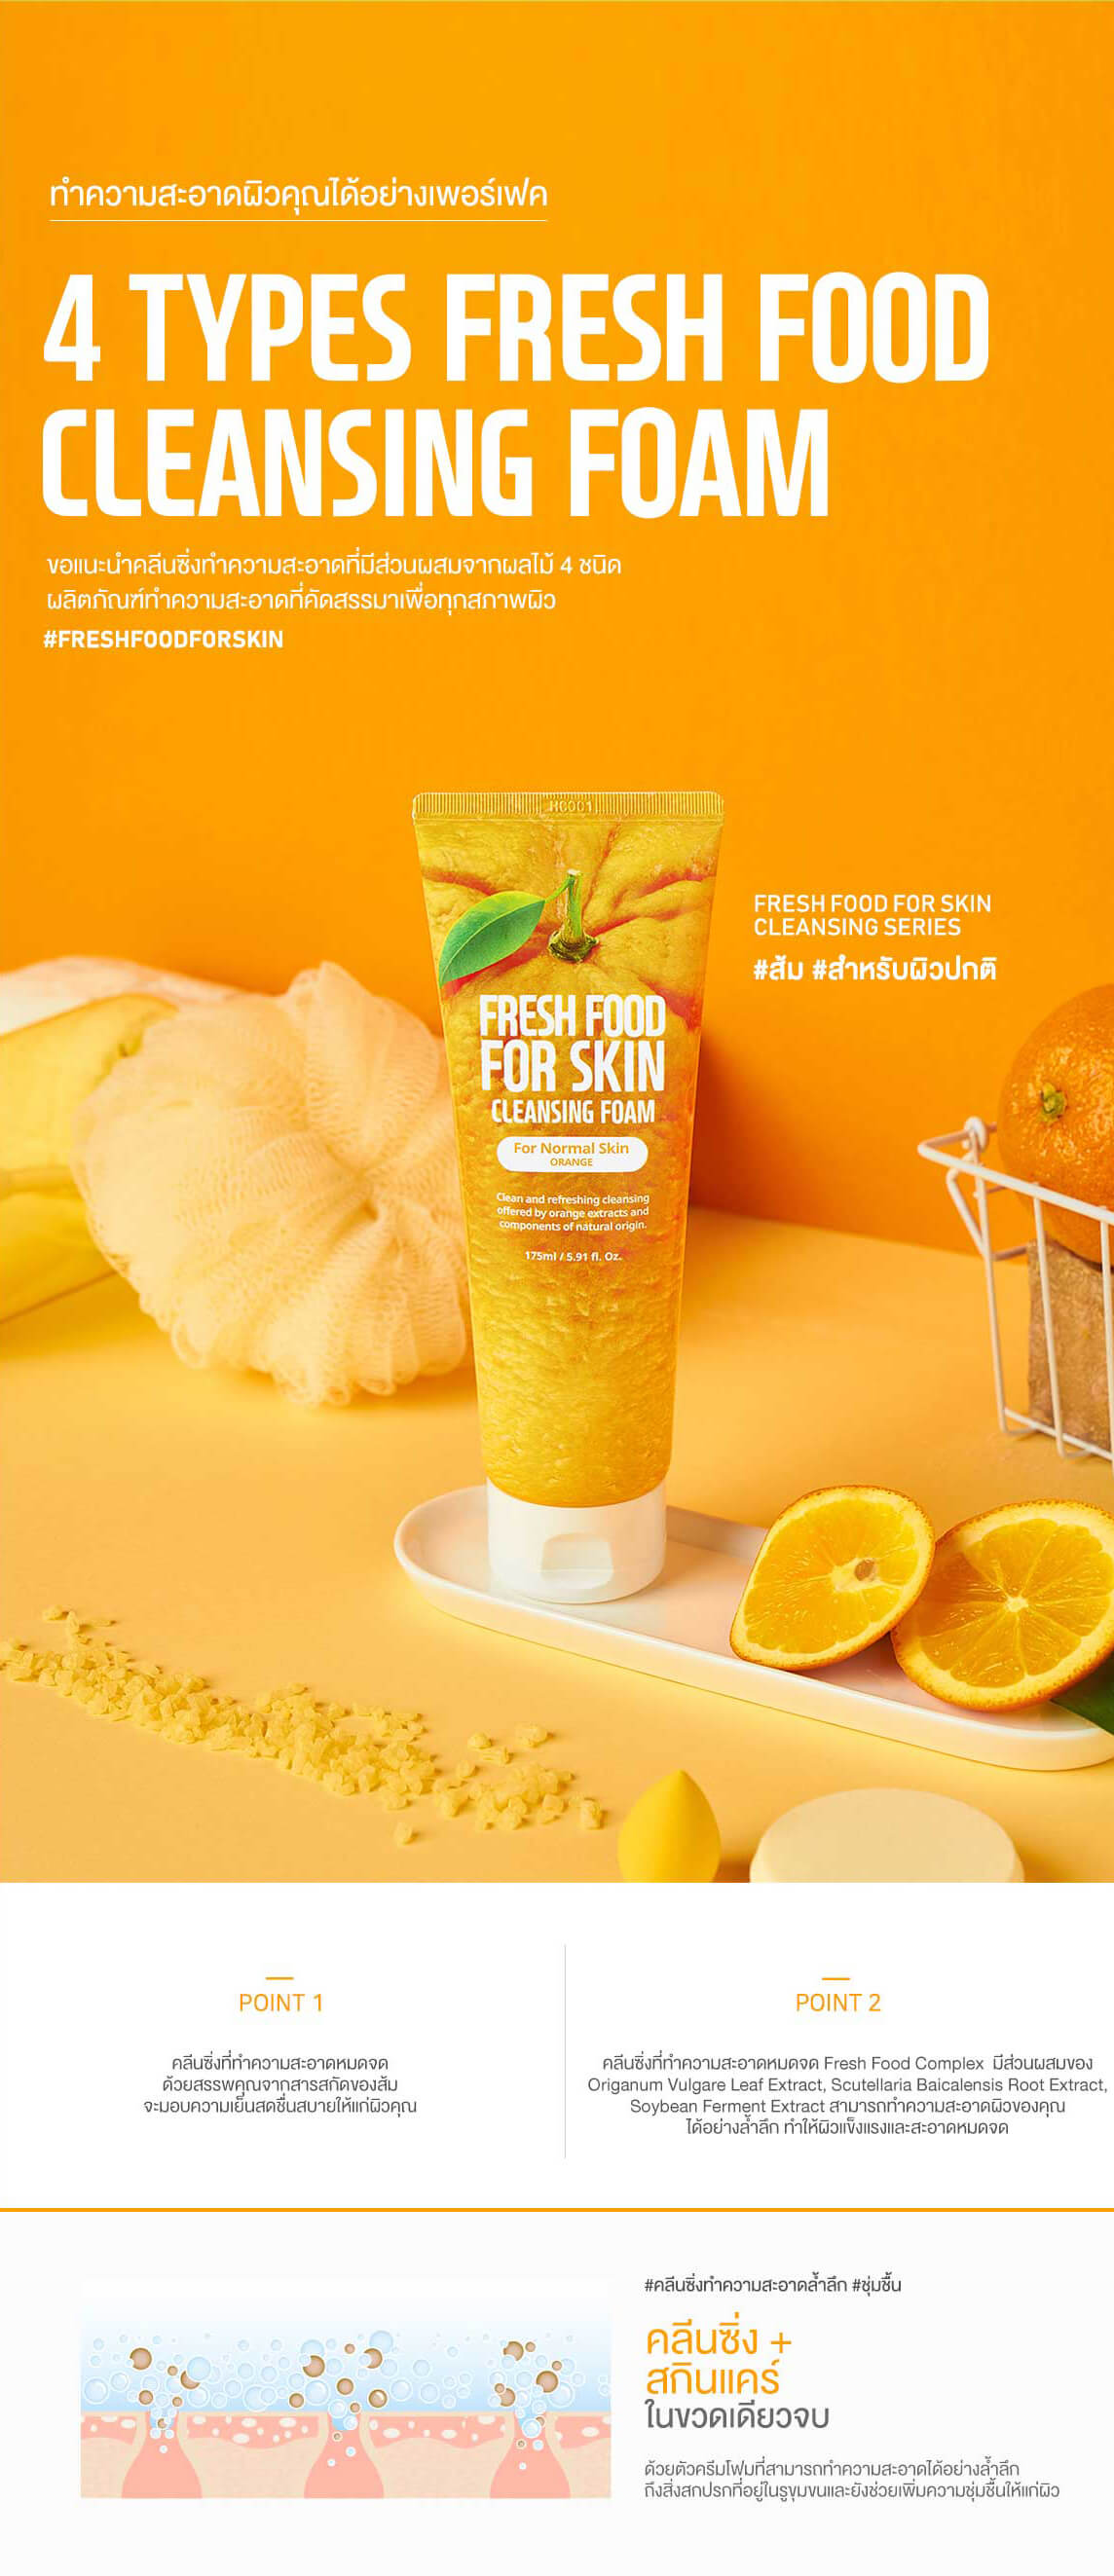 Farm Skin Fresh Food For Skin Cleansing Foam (Orange) 100 ml  คลีนซิ่งทำความสะอาดผิวจากส้ม เหมาะสำหรับผิวทั่วไป มอบผิวชุ่มชื้นและความเย็นสดชื่นหลังล้างหน้า อ่อนโยนไม่ทำร้ายผิว ทำความสะอาดเครื่องสำอาง และขจัดสิ่งสกปรกได้อย่างล้ำลึก ช่วยควบคุมความมันและเพิ่มความชุ่มชื้นให้กับผิว เนื้อฟองโฟมเนียนนุ่ม ไม่ก่อให้เกิดการระคายเคือง